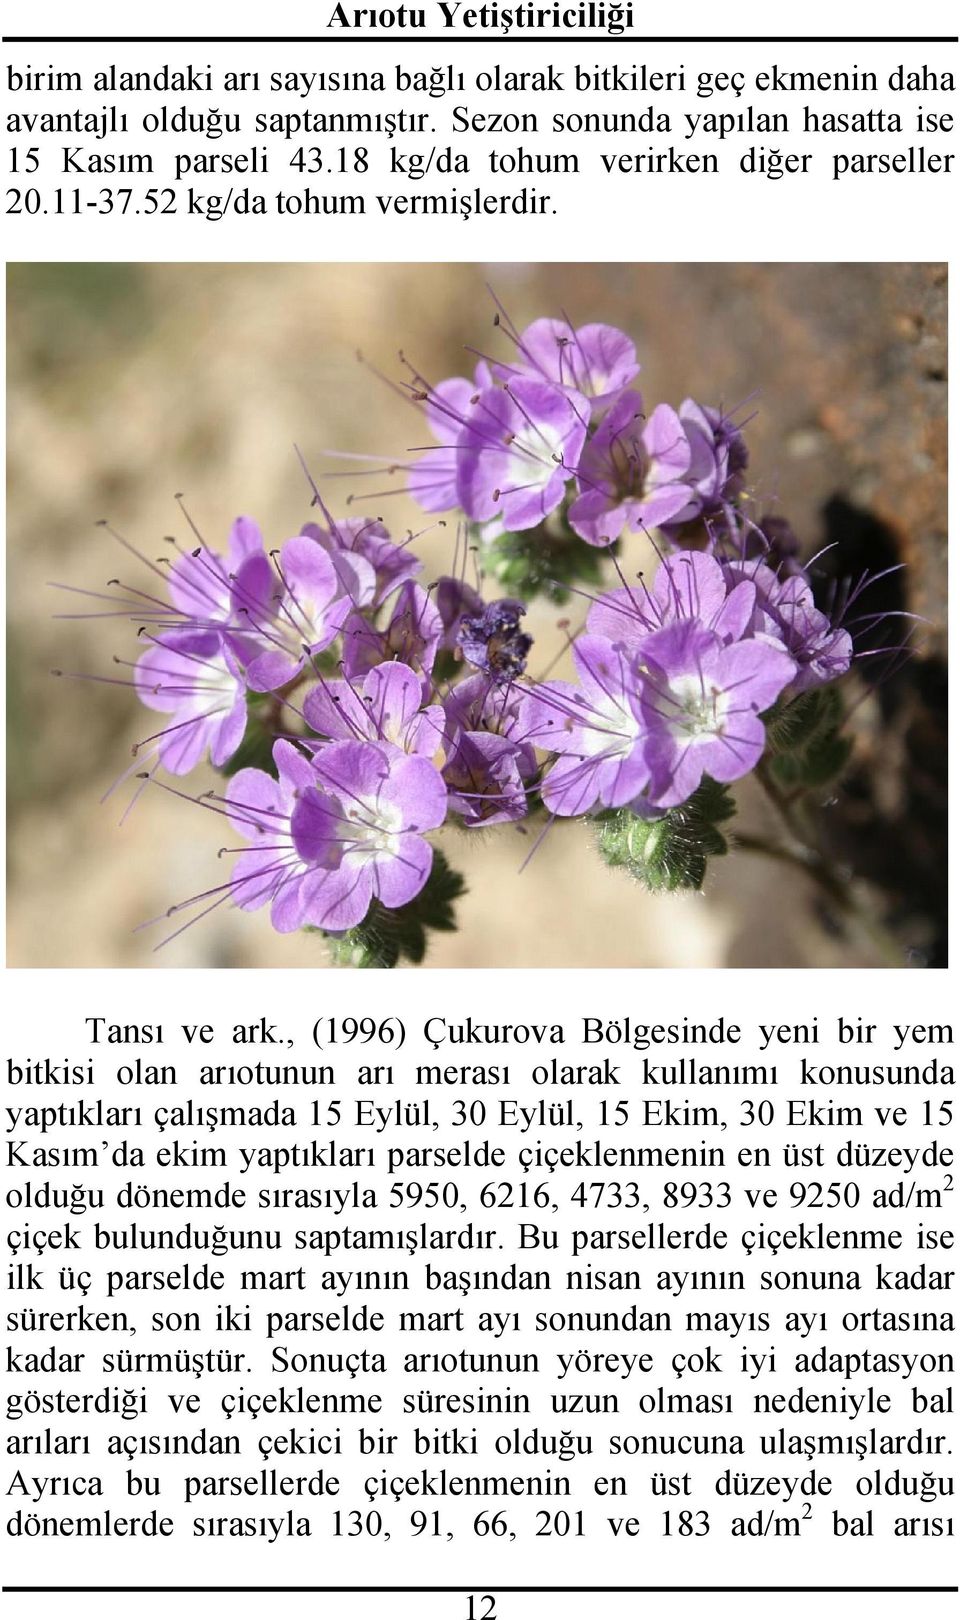 , (1996) Çukurova Bölgesinde yeni bir yem bitkisi olan arıotunun arı merası olarak kullanımı konusunda yaptıkları çalışmada 15 Eylül, 30 Eylül, 15 Ekim, 30 Ekim ve 15 Kasım da ekim yaptıkları